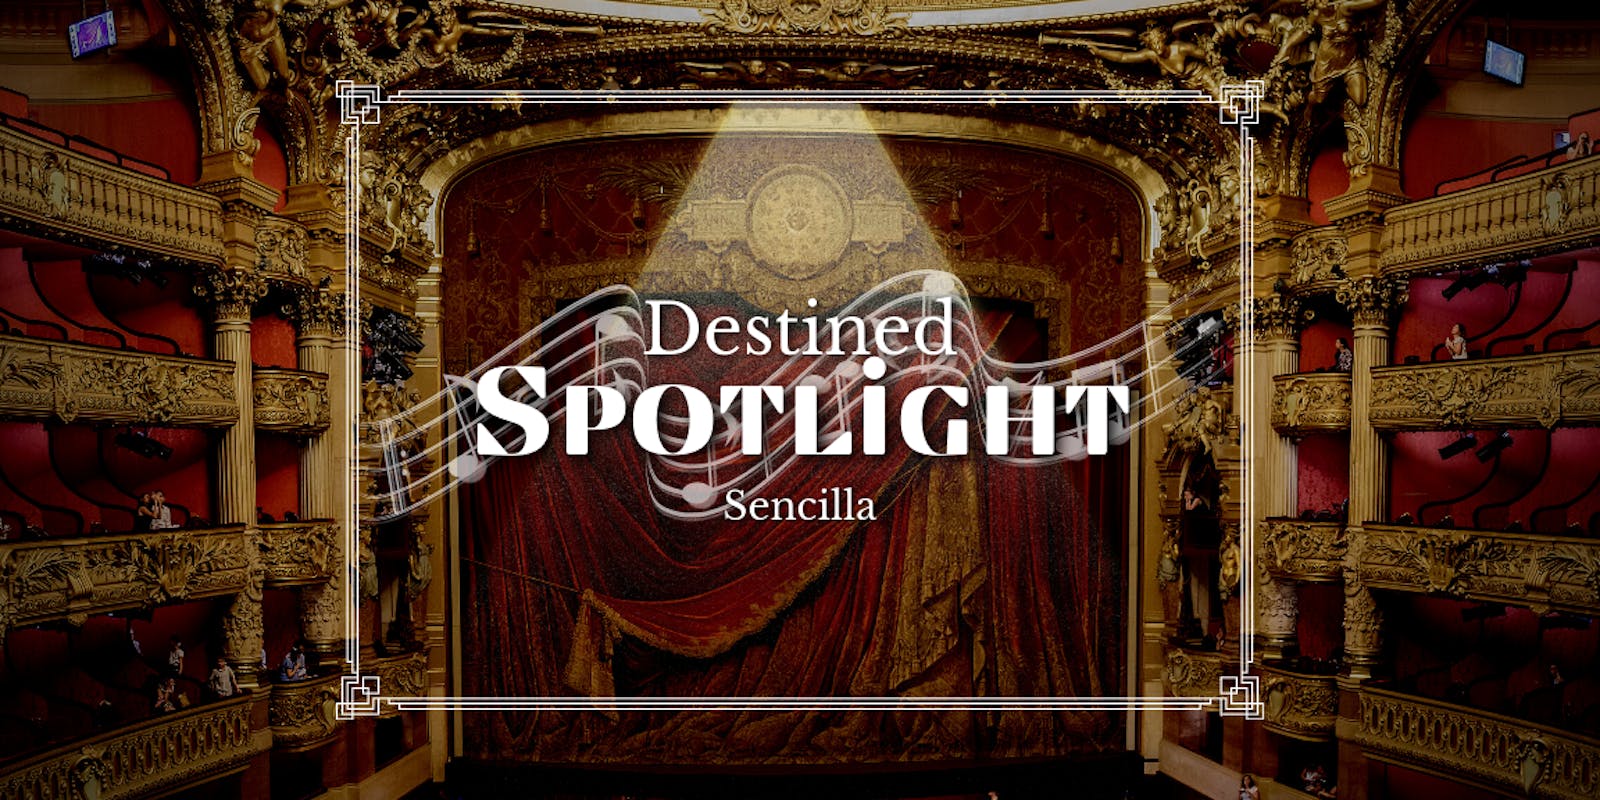 Destined Spotlight by Sencilla